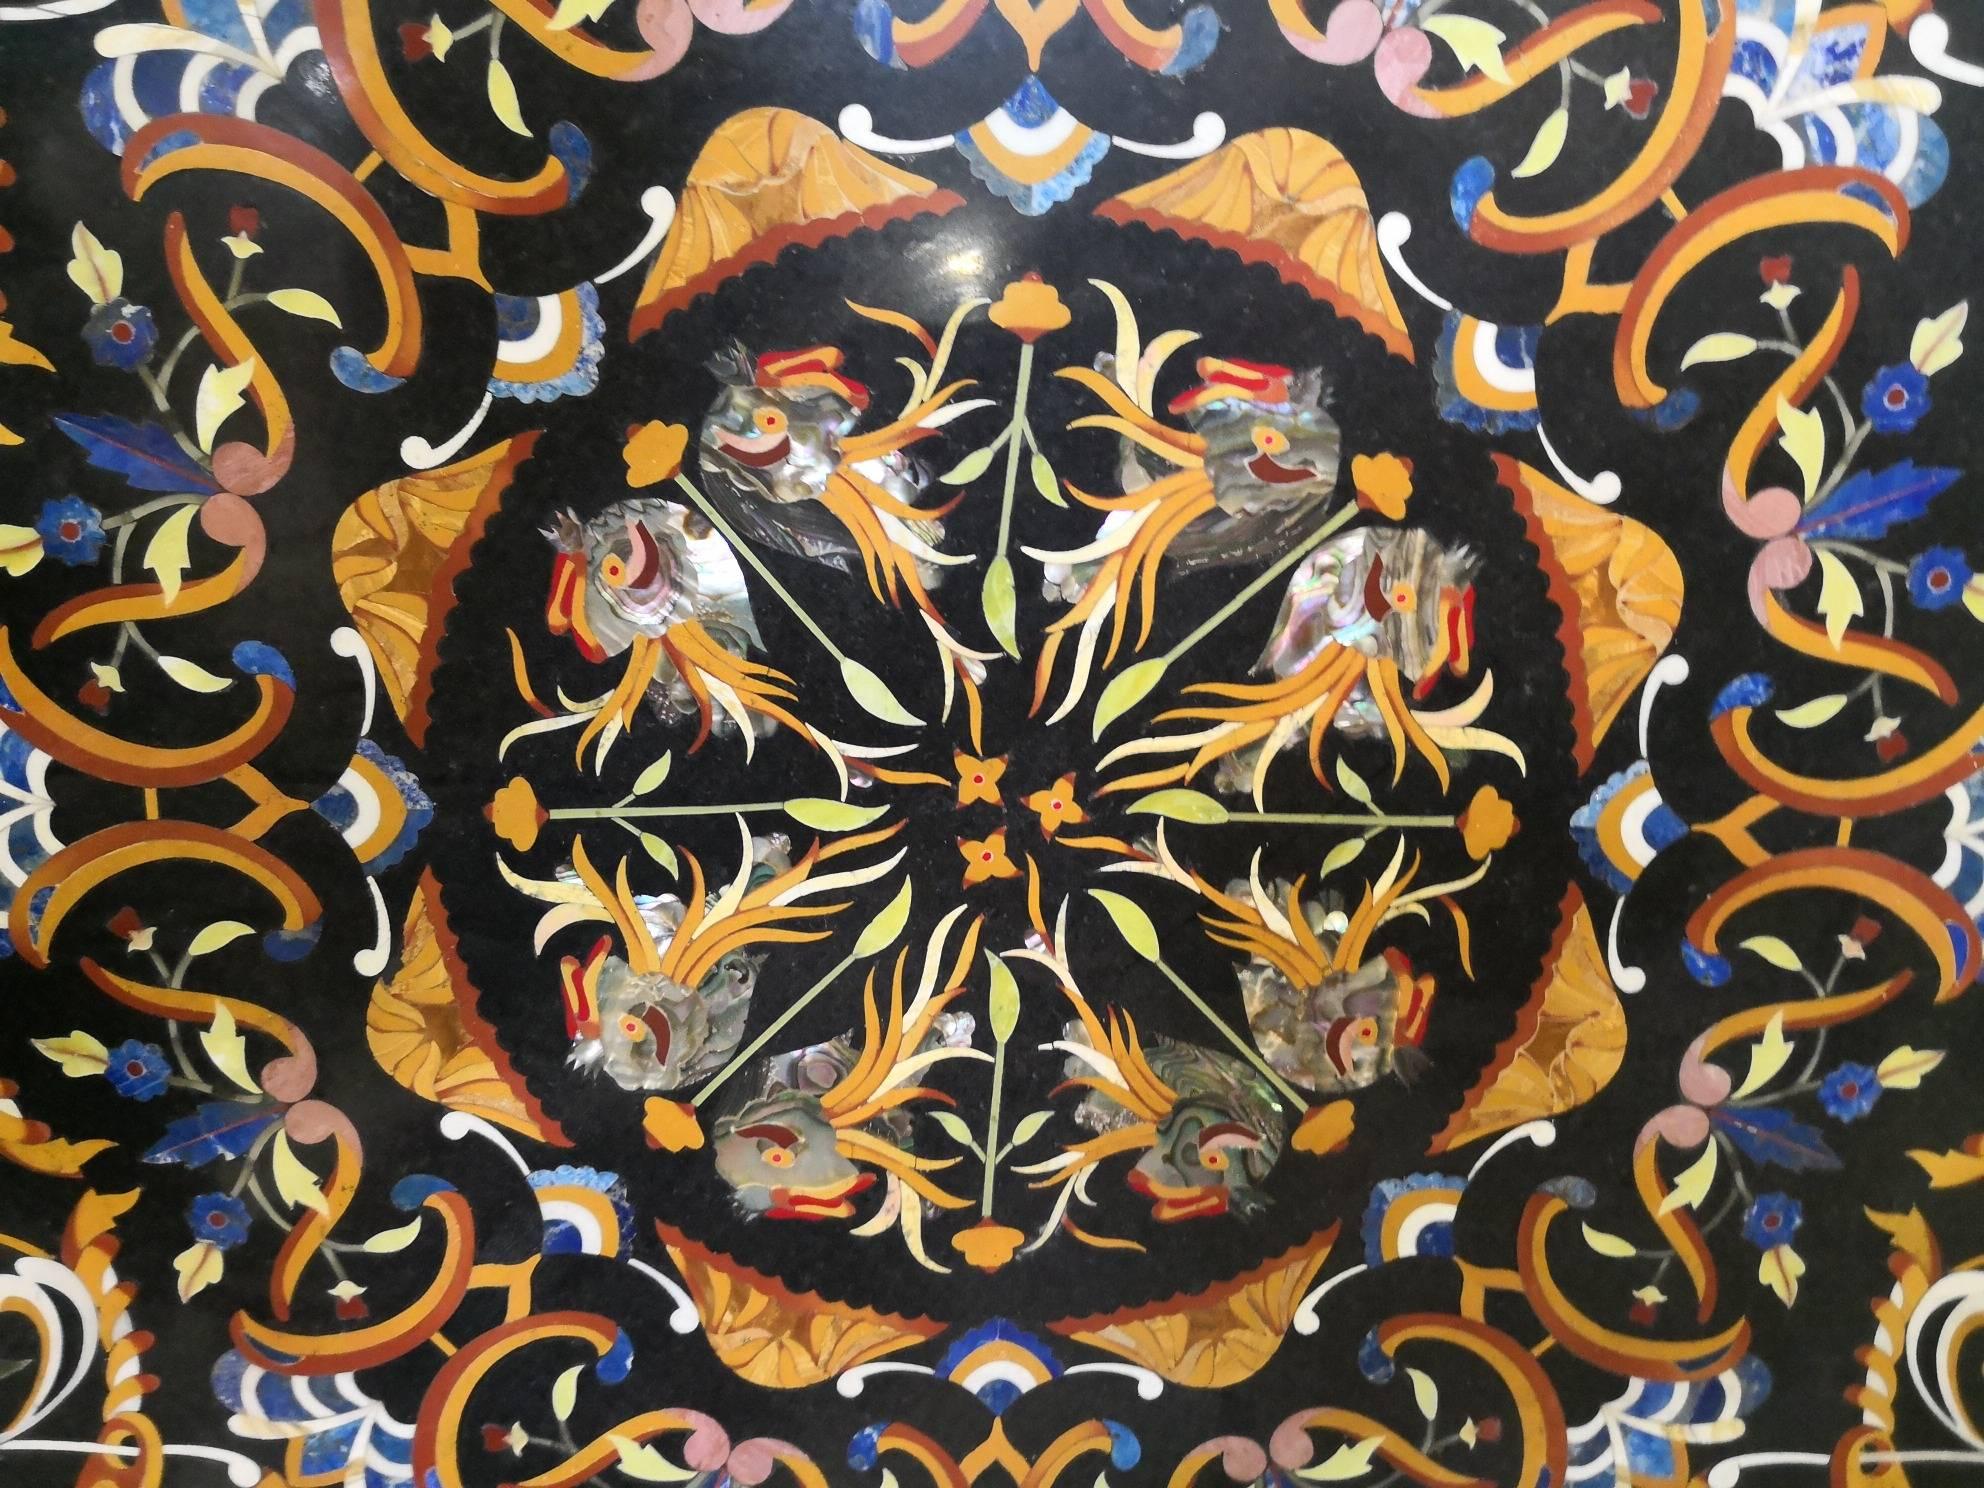 Reproduction artisanale d'un motif ornemental italien des années 1700 sur un plateau en marbre noir belge. Des vases avec des fleurs, des coquillages, des poissons et une myriade d'éléments sont confirmés par l'utilisation astucieuse de la Pietre